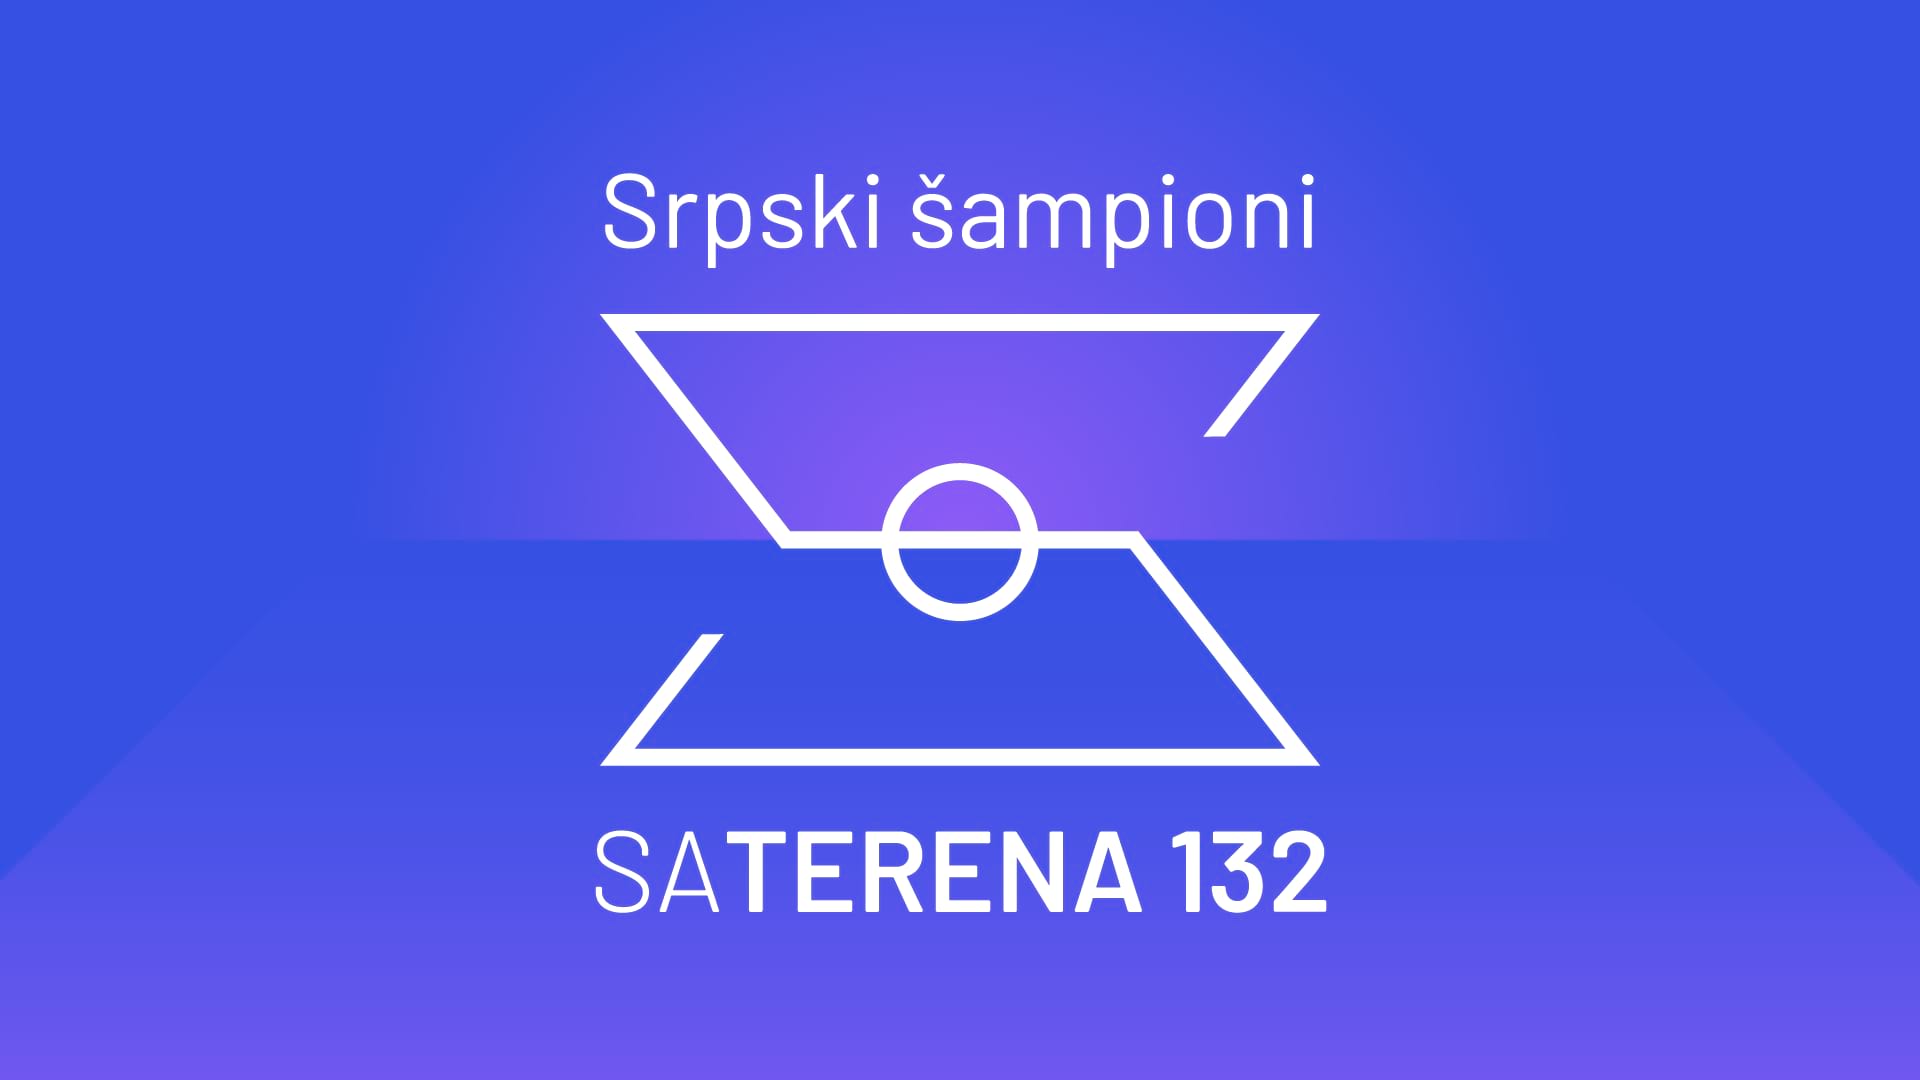 Sa terena 132: Srpski šampioni